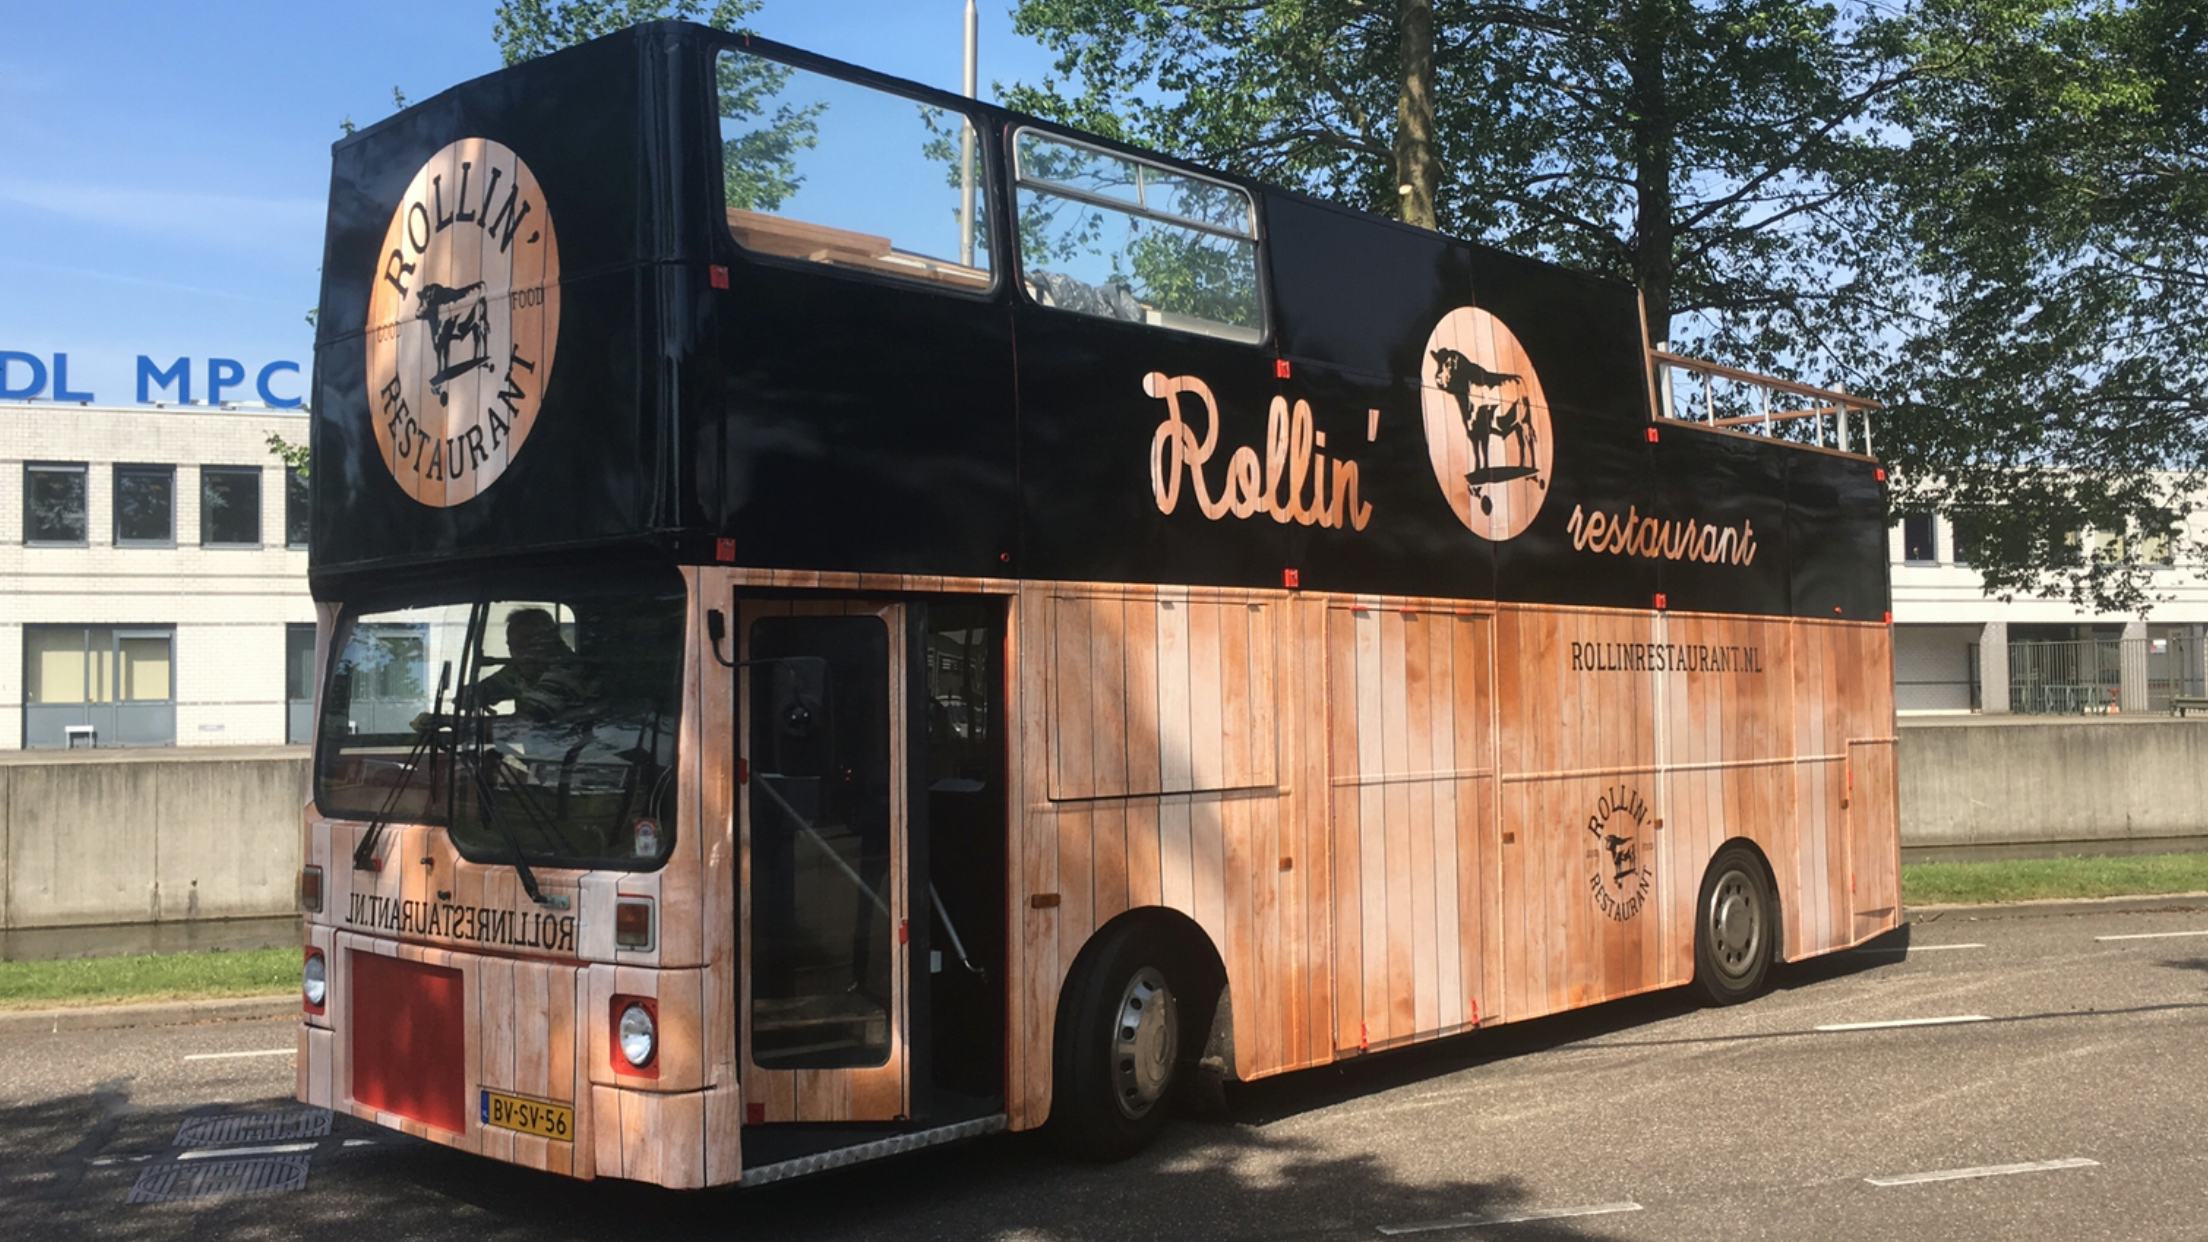 Rollin' restaurant brengt beleving met de bus